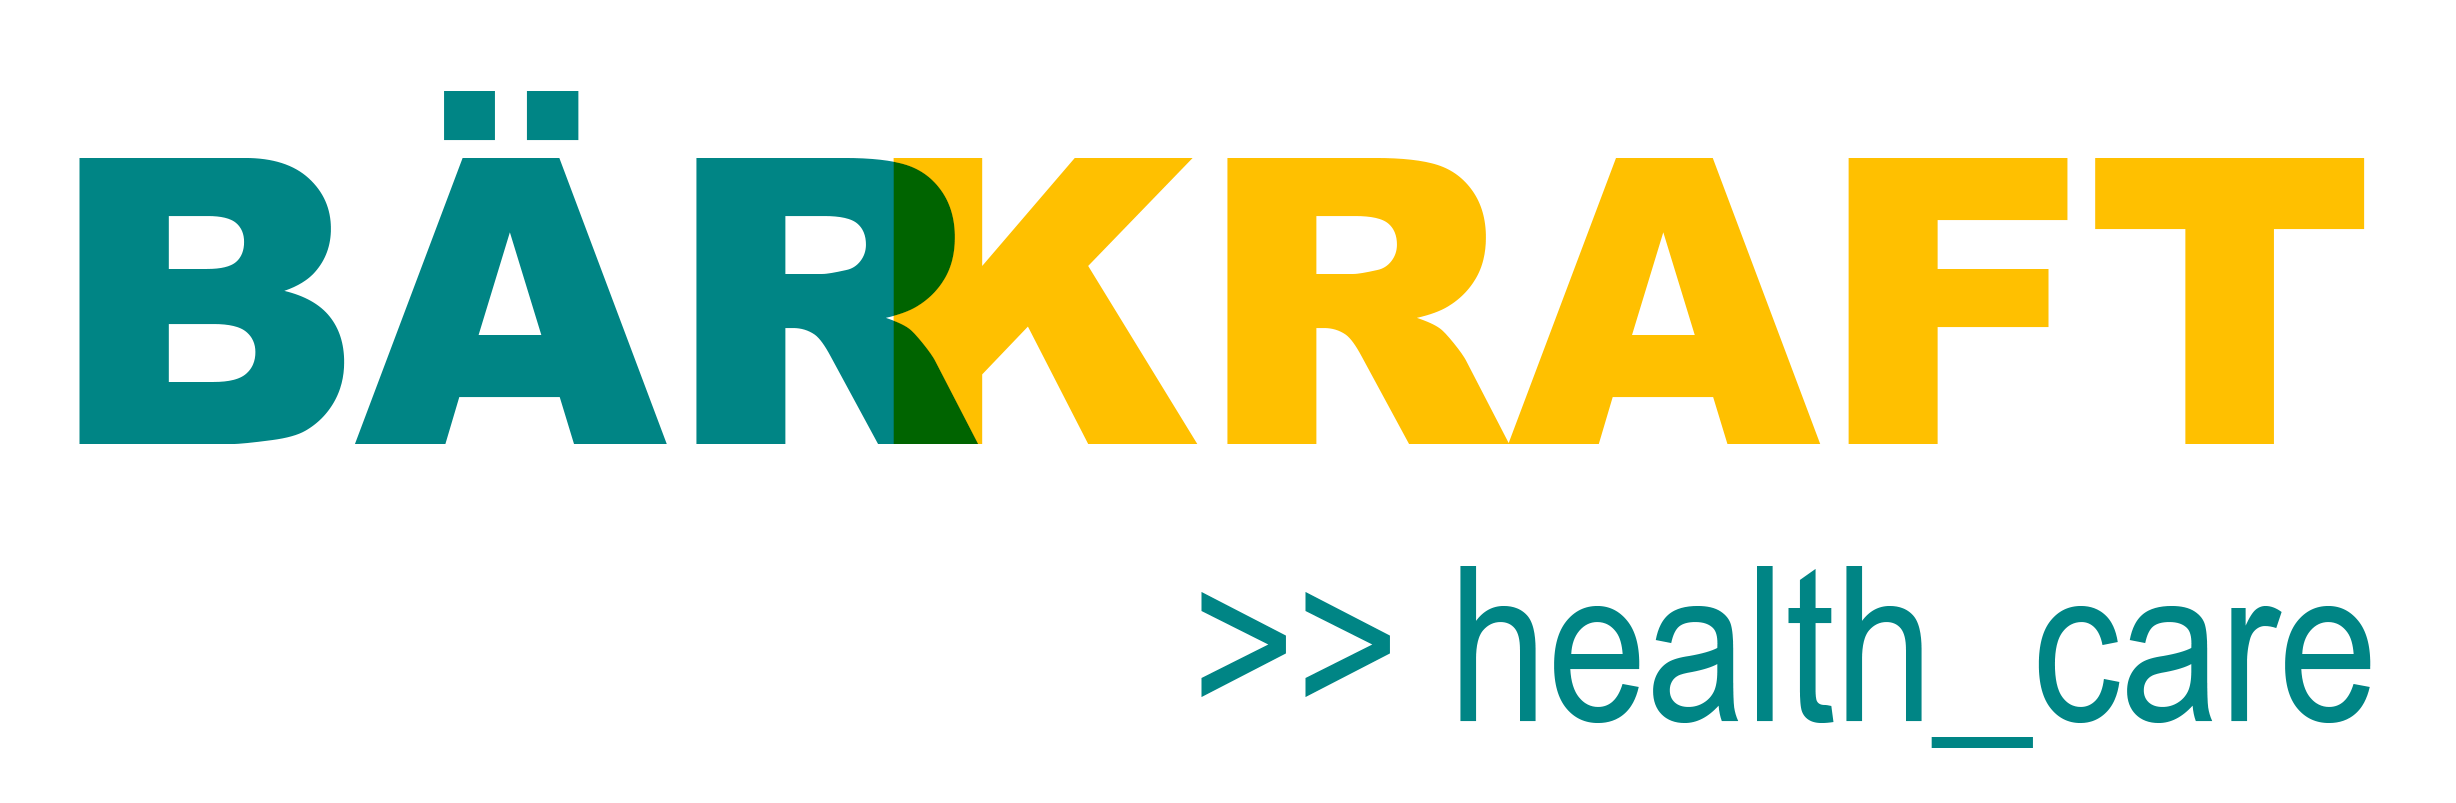 Brkfraft Logo.jpg